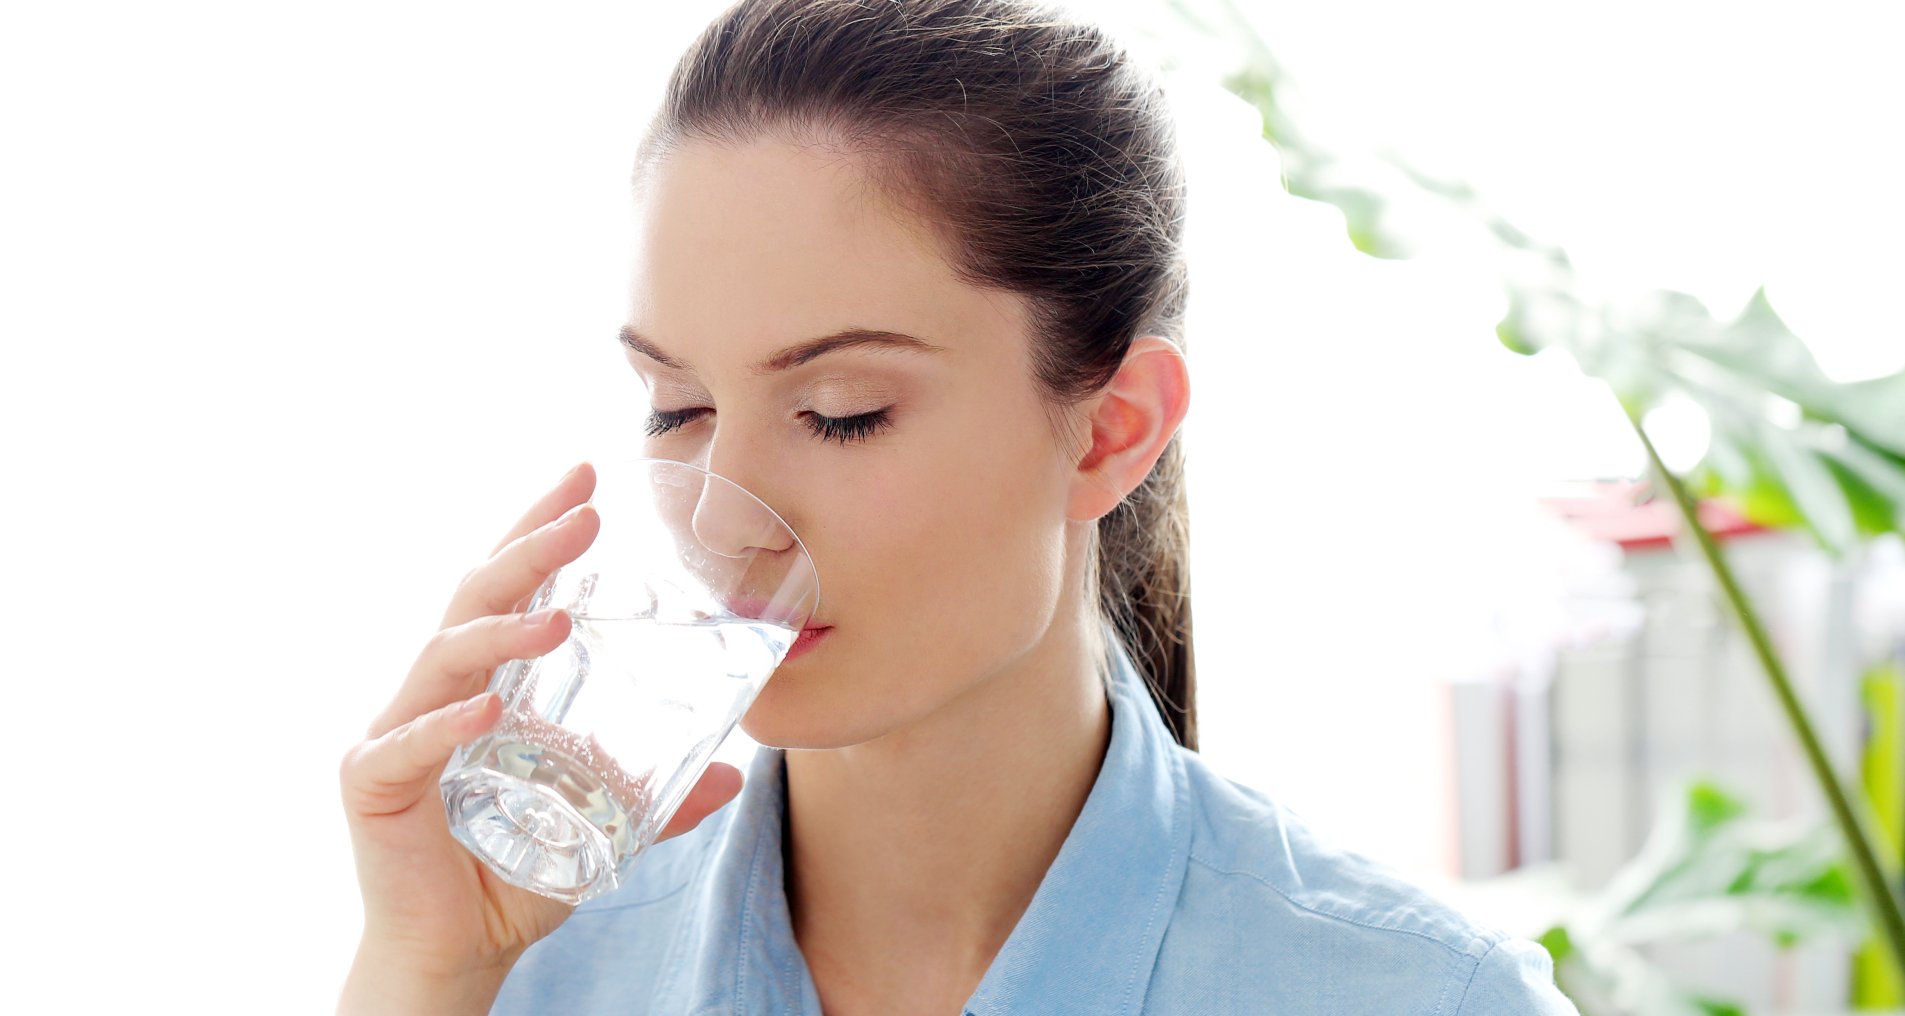 Вода и пищеварение. Вредно ли запивать еду? | Управления Роспотребнадзора по Курской области